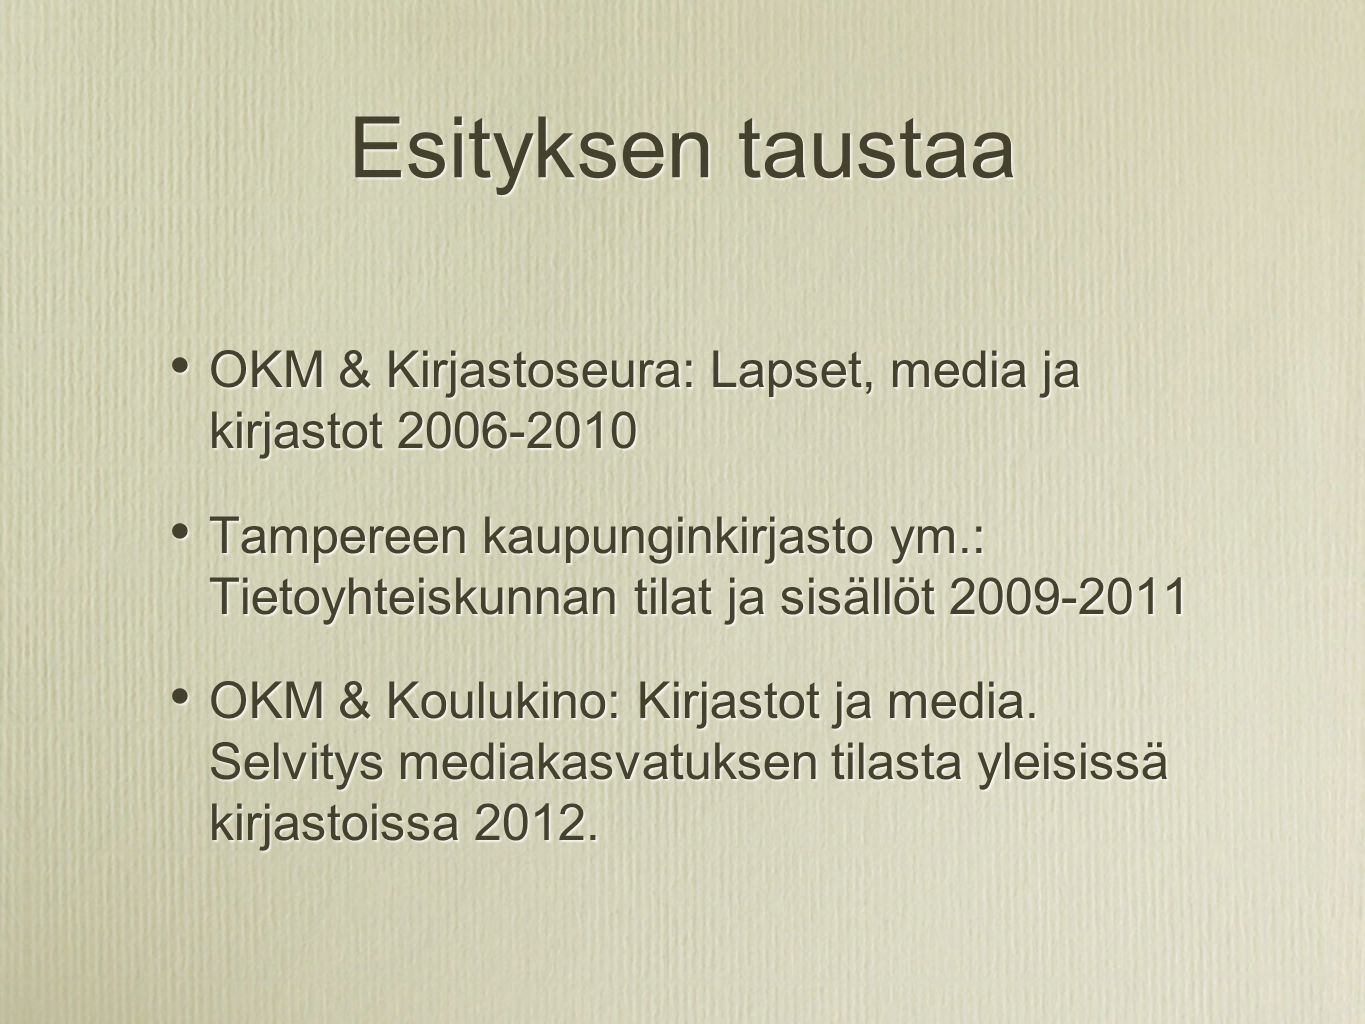 Esityksen taustaa • OKM & Kirjastoseura: Lapset, media ja kirjastot • Tampereen kaupunginkirjasto ym.: Tietoyhteiskunnan tilat ja sisällöt • OKM & Koulukino: Kirjastot ja media.